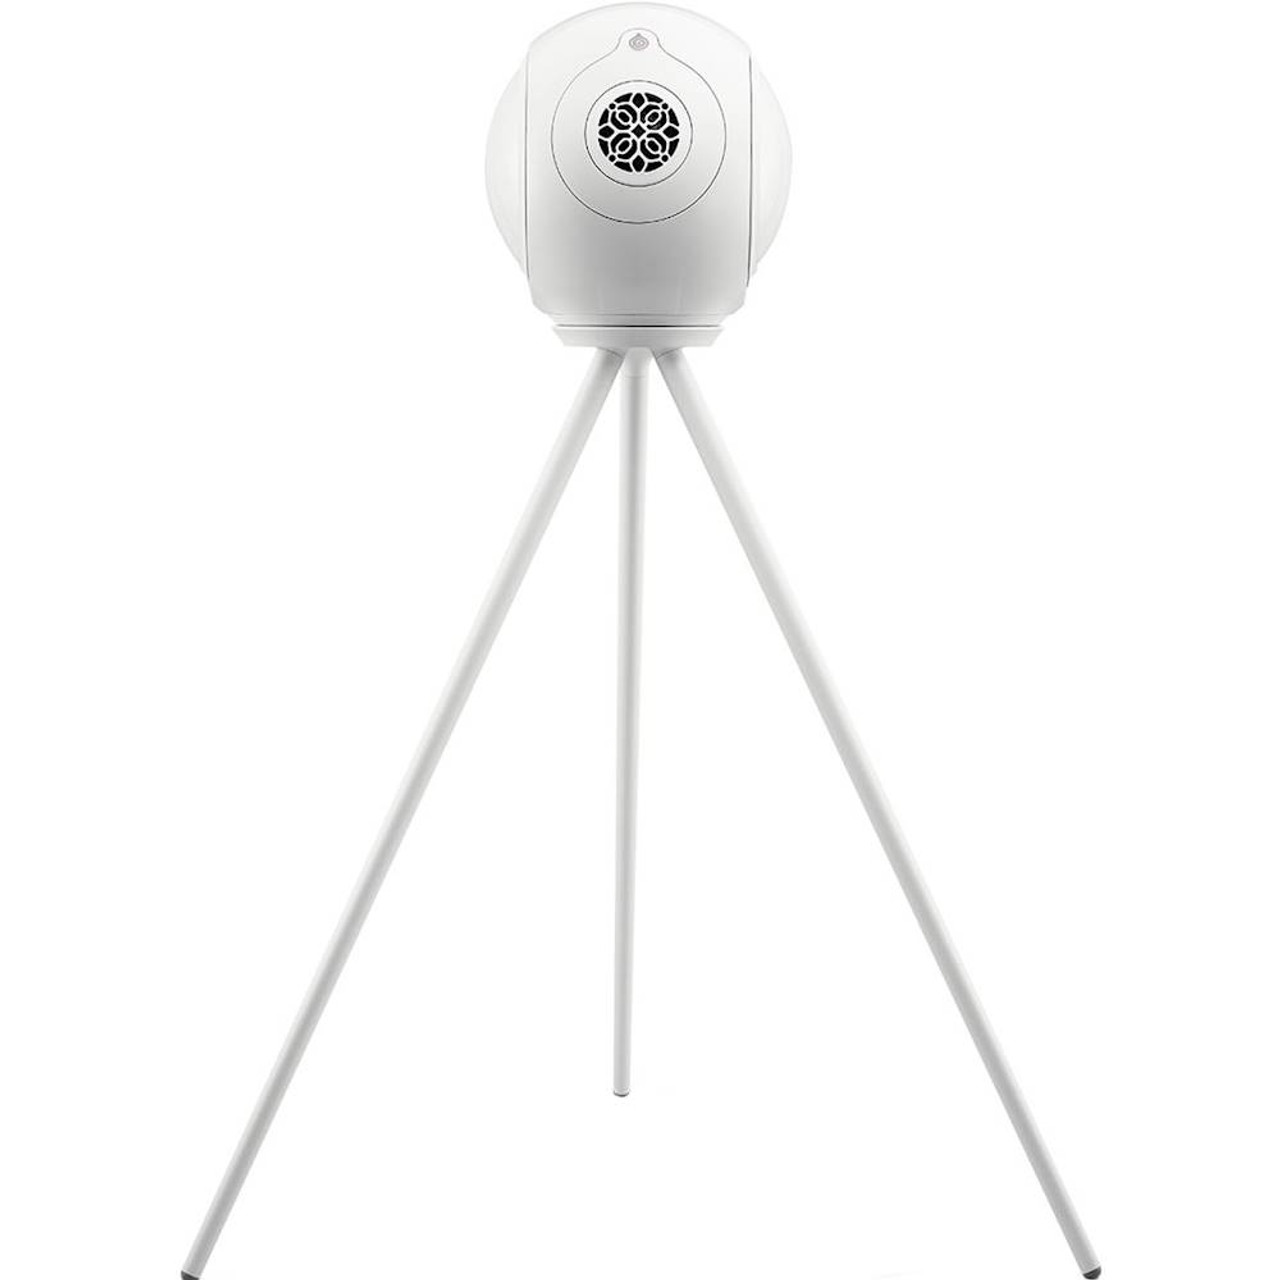 Devialet - Legs Speaker Mount for Devialet Phantom Reactor - Iconic White